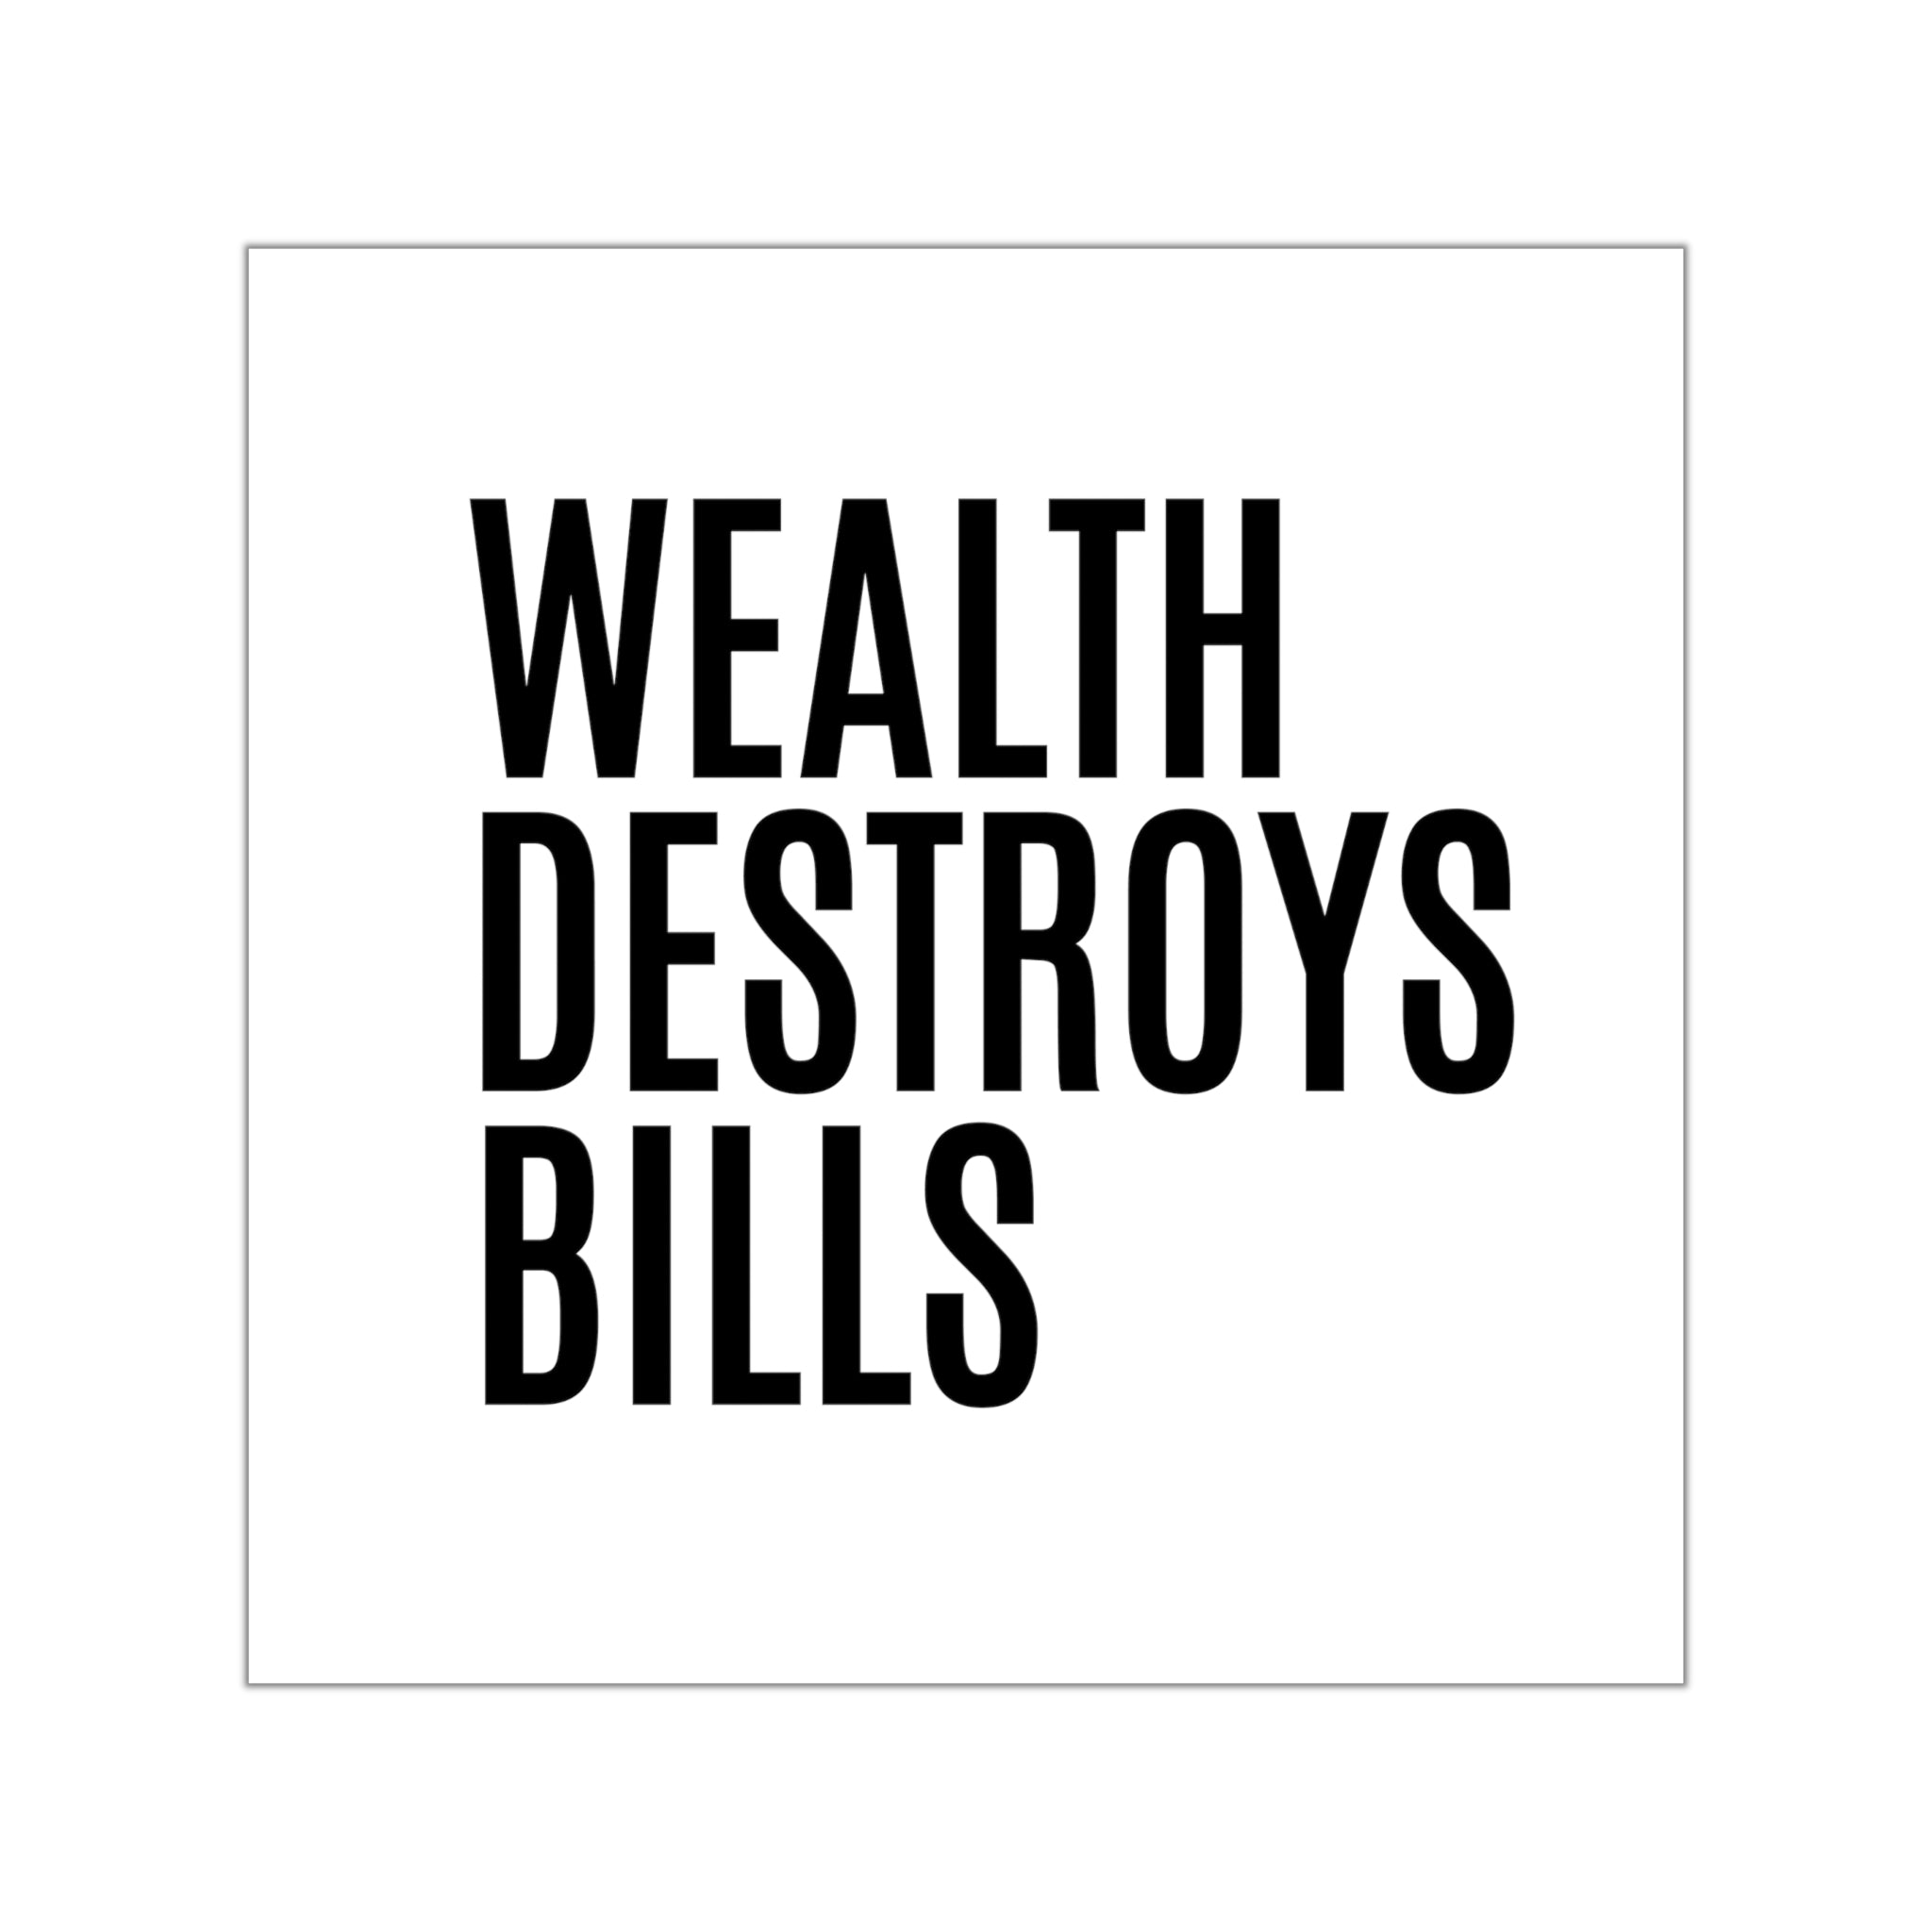 Shop true wealth quotes | Wealth destroys bills sticker  #size_8x8-inches